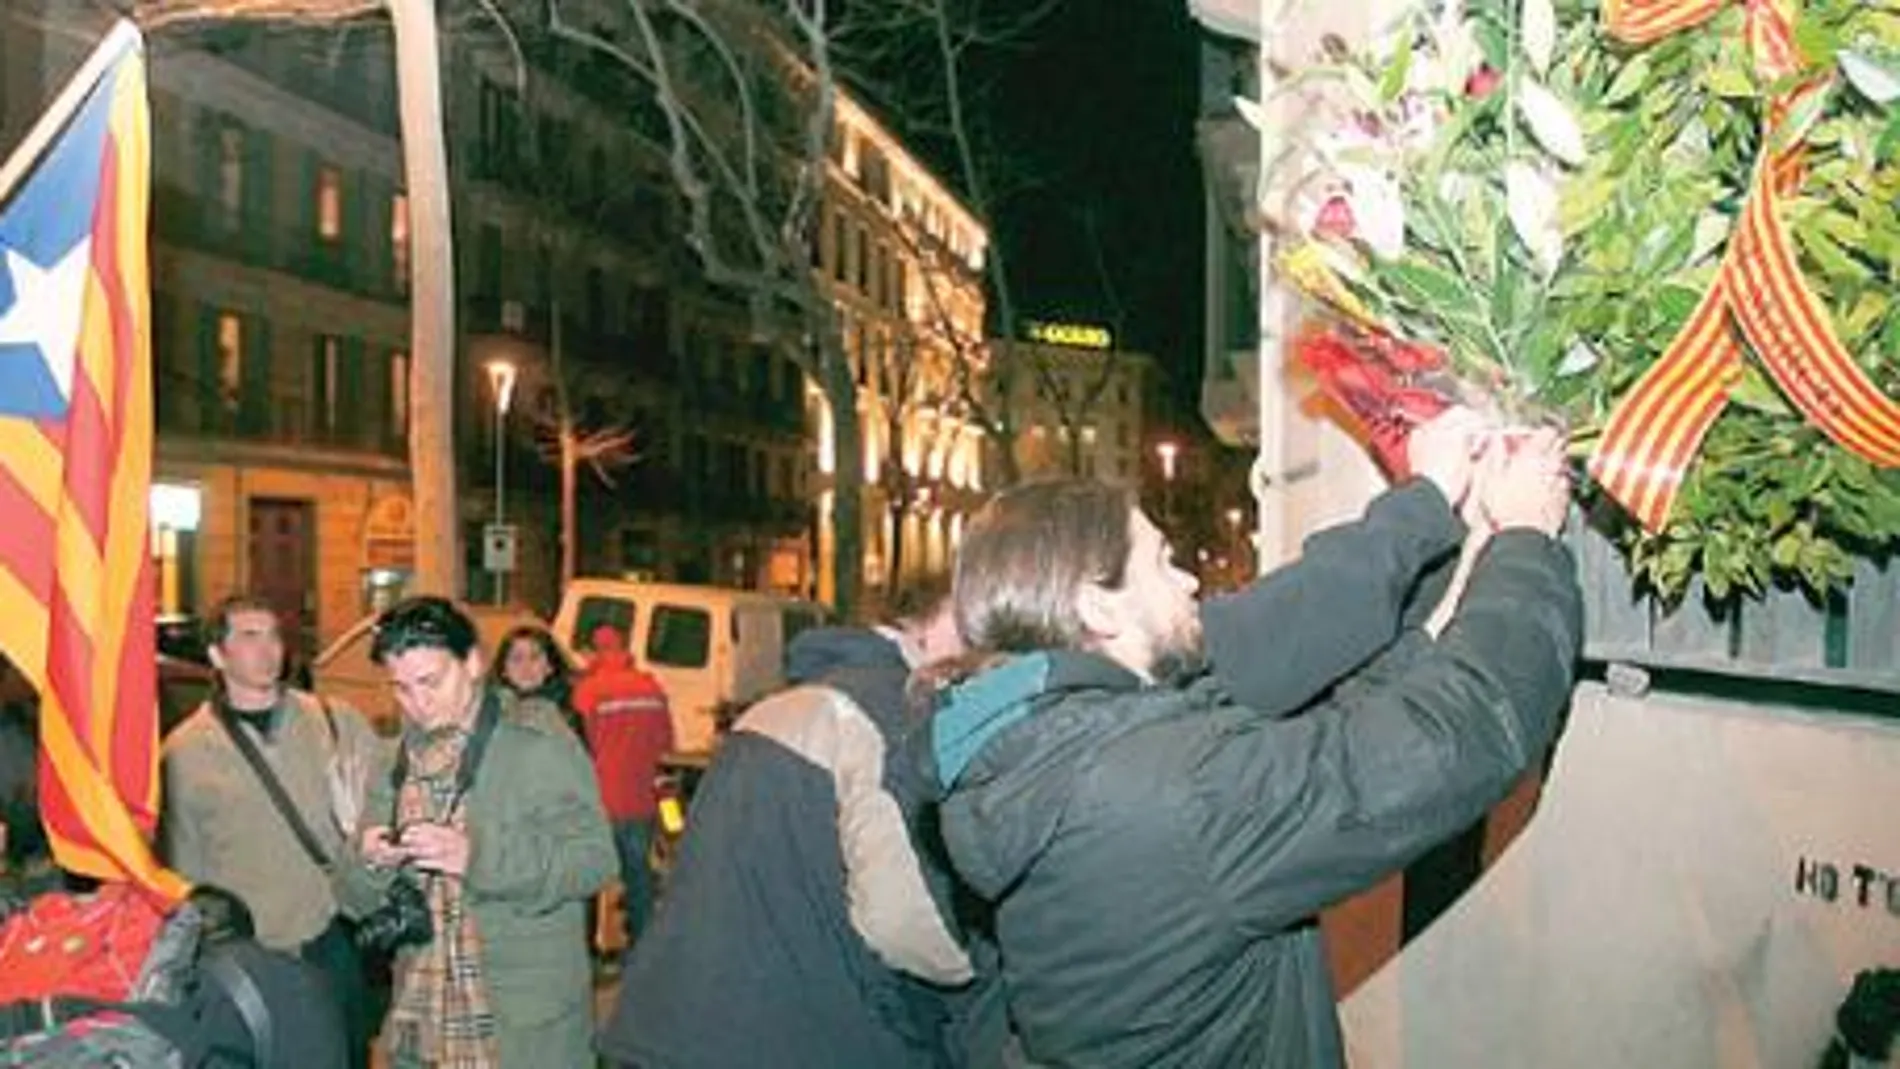 El Ayuntamiento de Barcelona permite la ofrenda a un terrorista de Terra Lliure